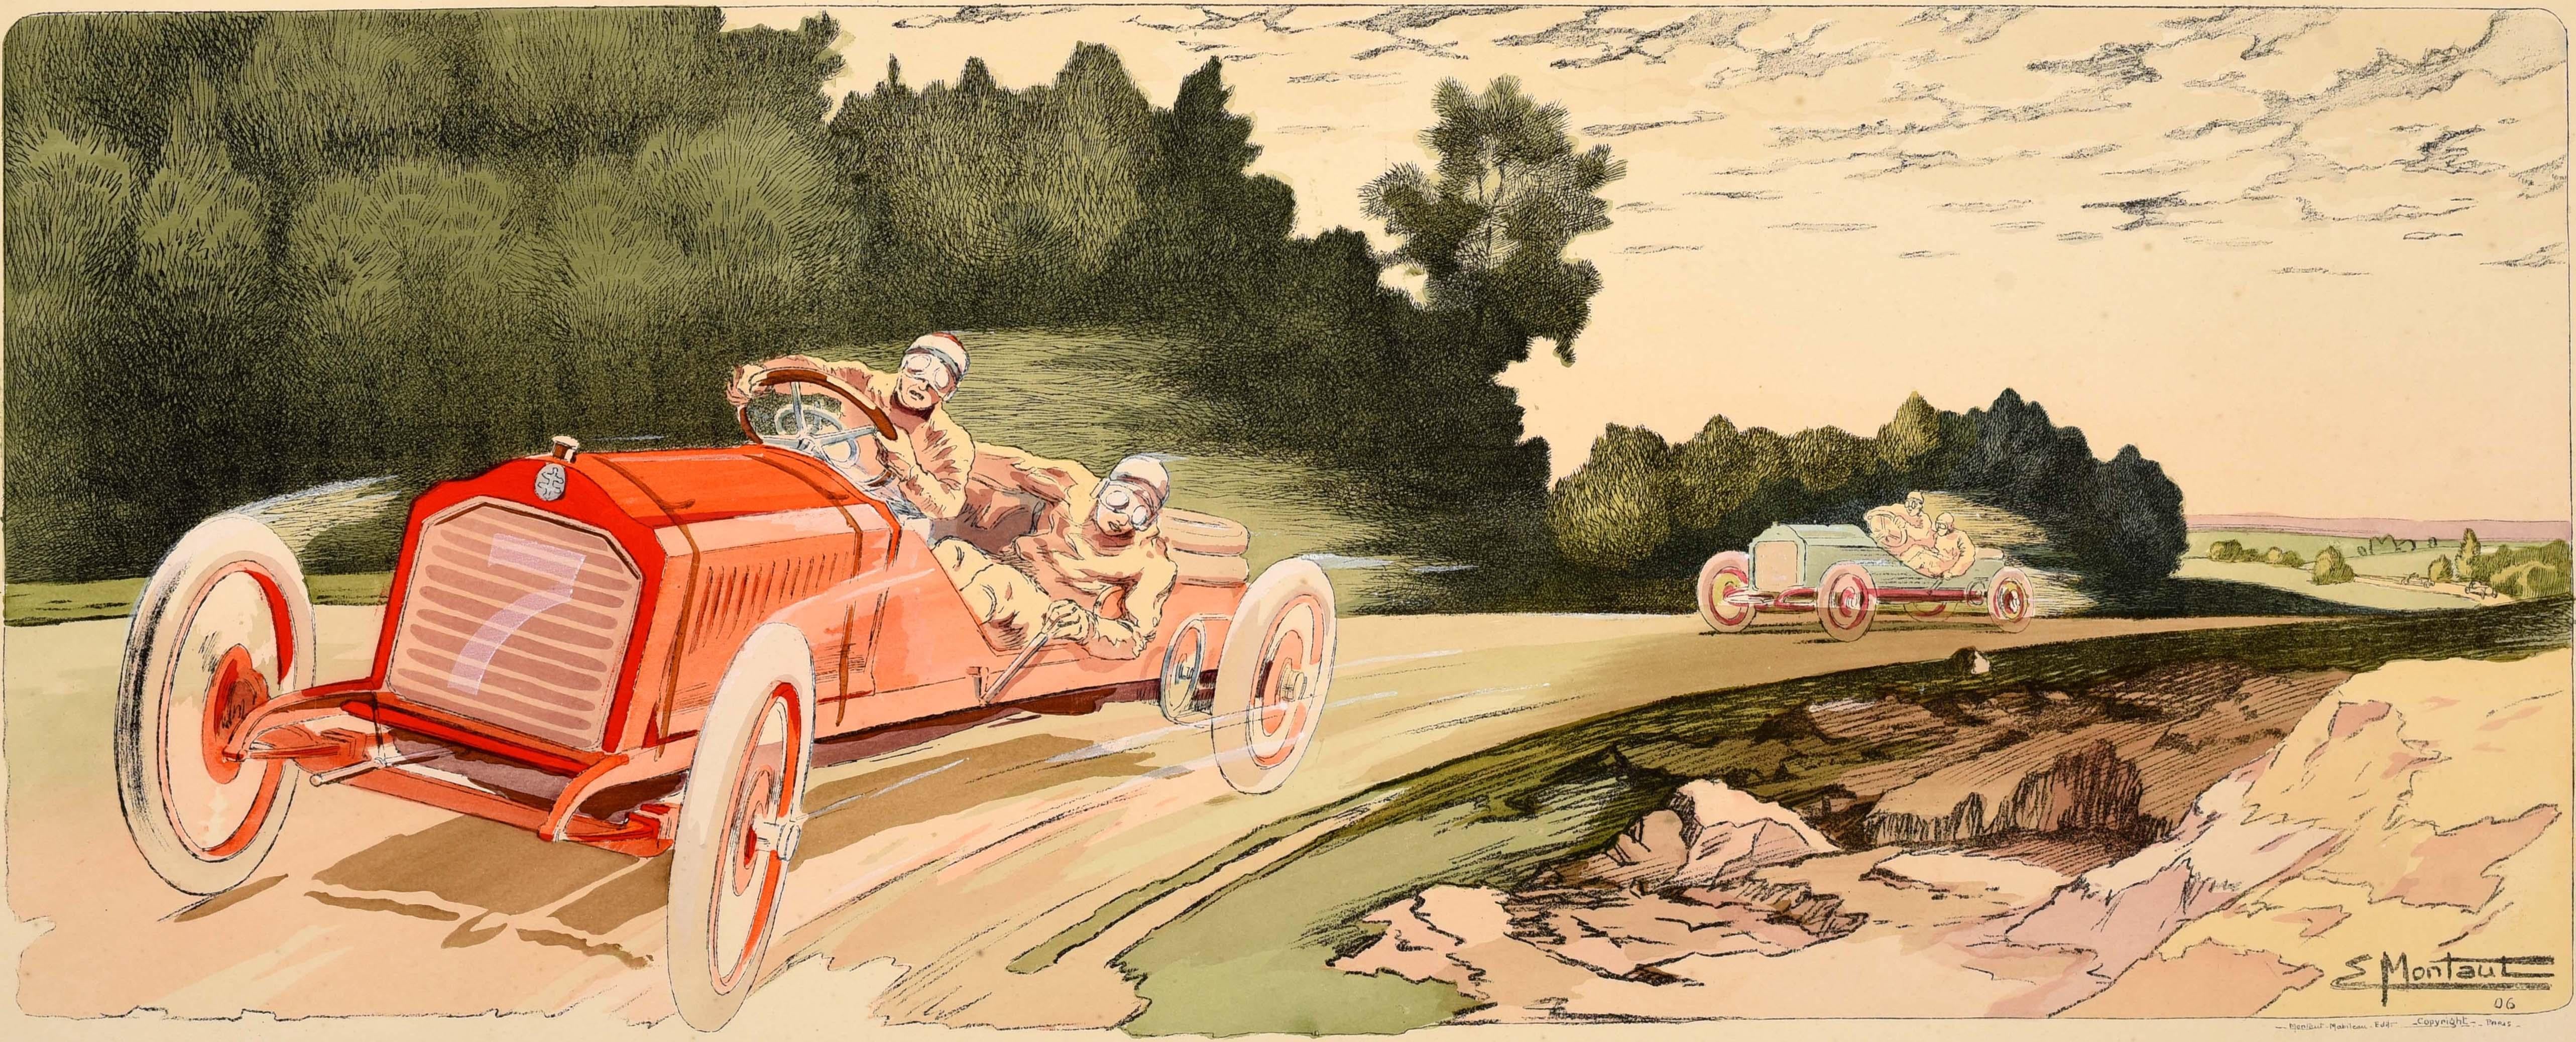 Affiche Motorsport originale du Circuit des Ardennes Belge 1906 Arthur Duray - Print de Ernest Montaut